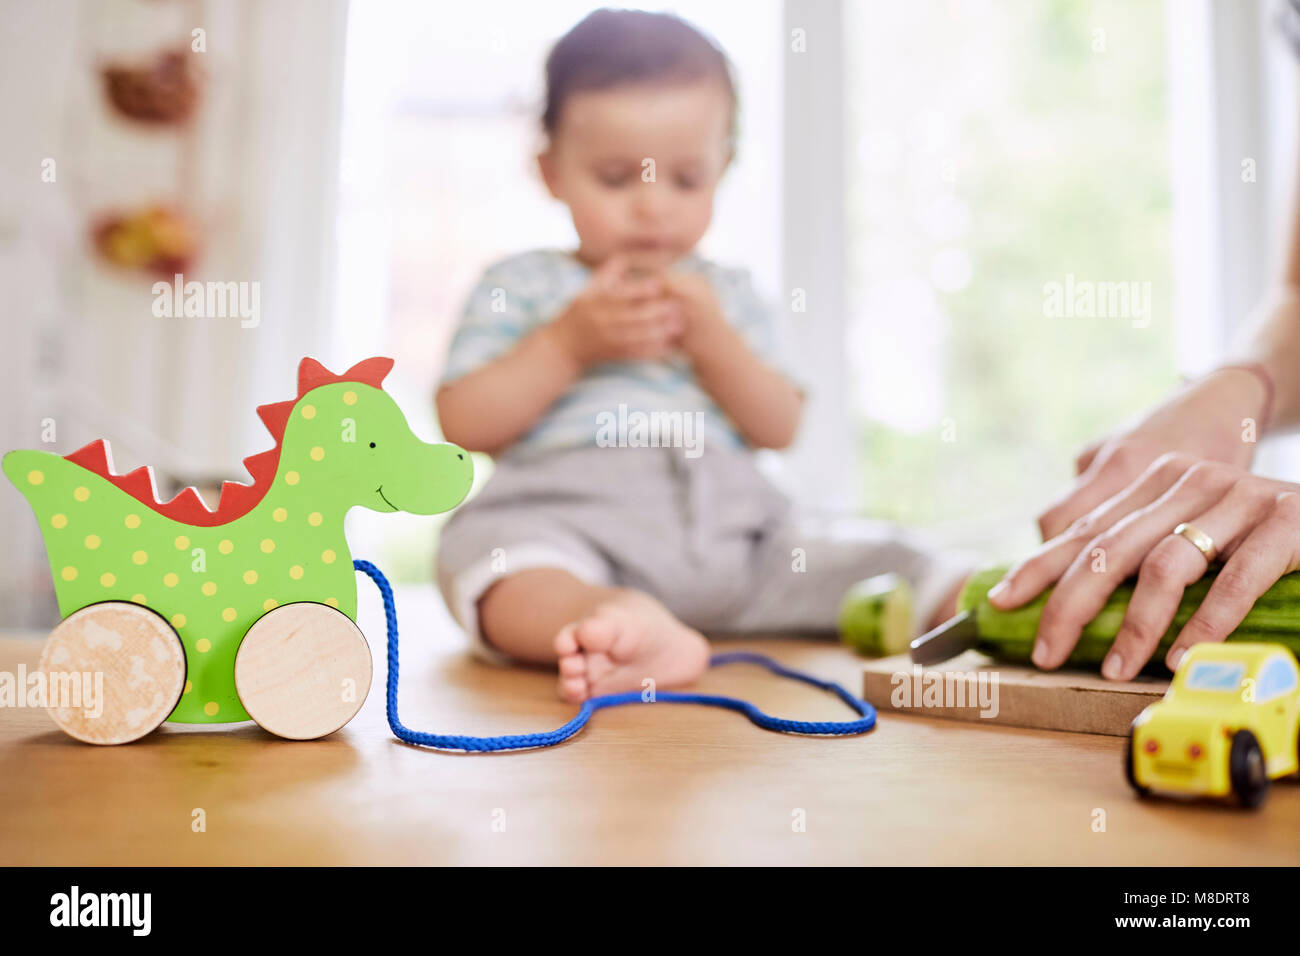 Baby ragazza seduta sul banco di cucina guarda la madre per affettare cetrioli Foto Stock